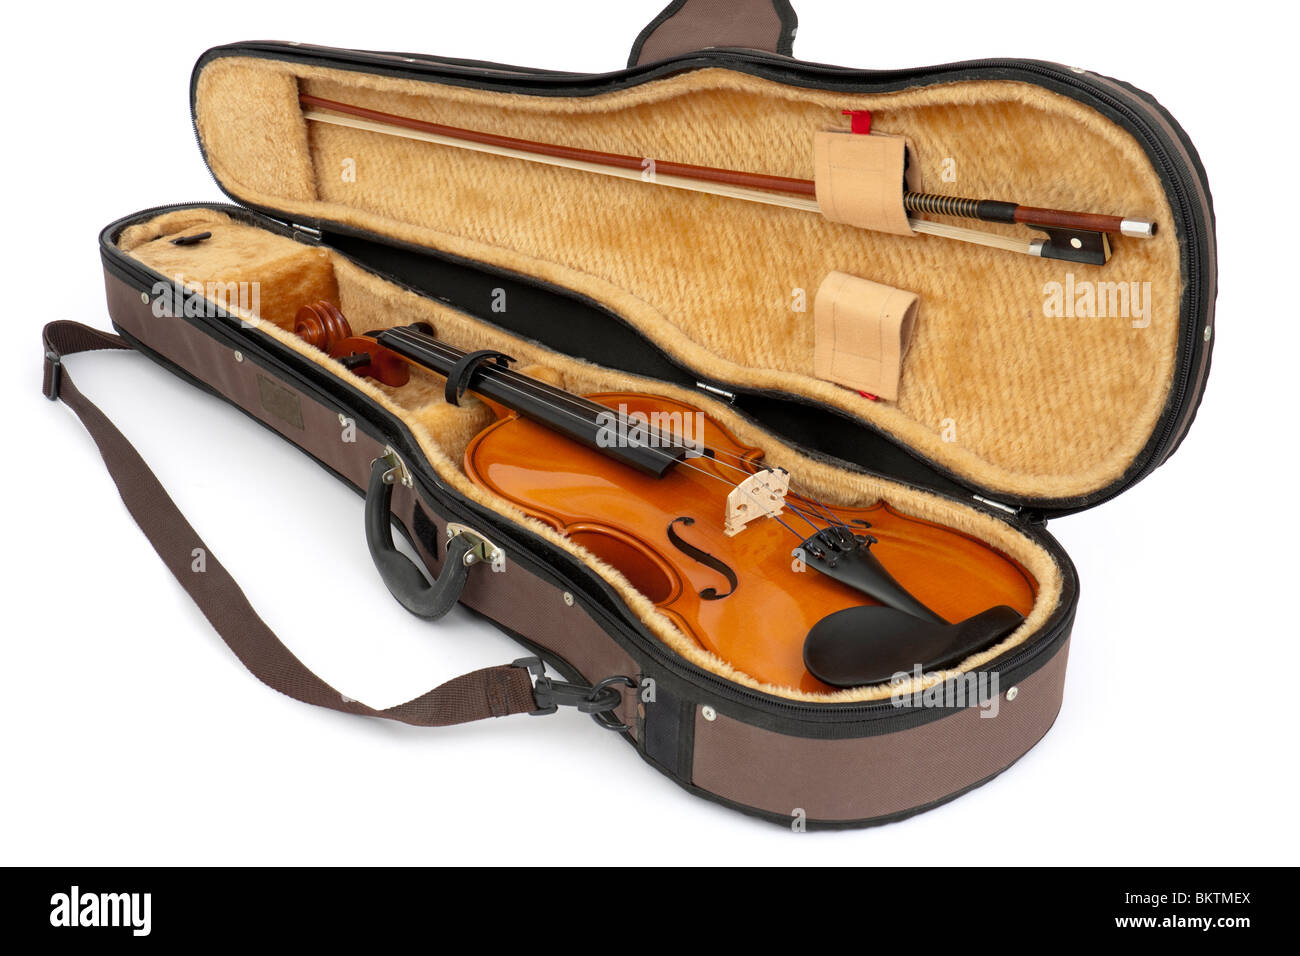 Vintage Andreas Zeller (Stentor) rumeno full-size student violino con archetto in custodia rigida, isolato su sfondo bianco Foto Stock